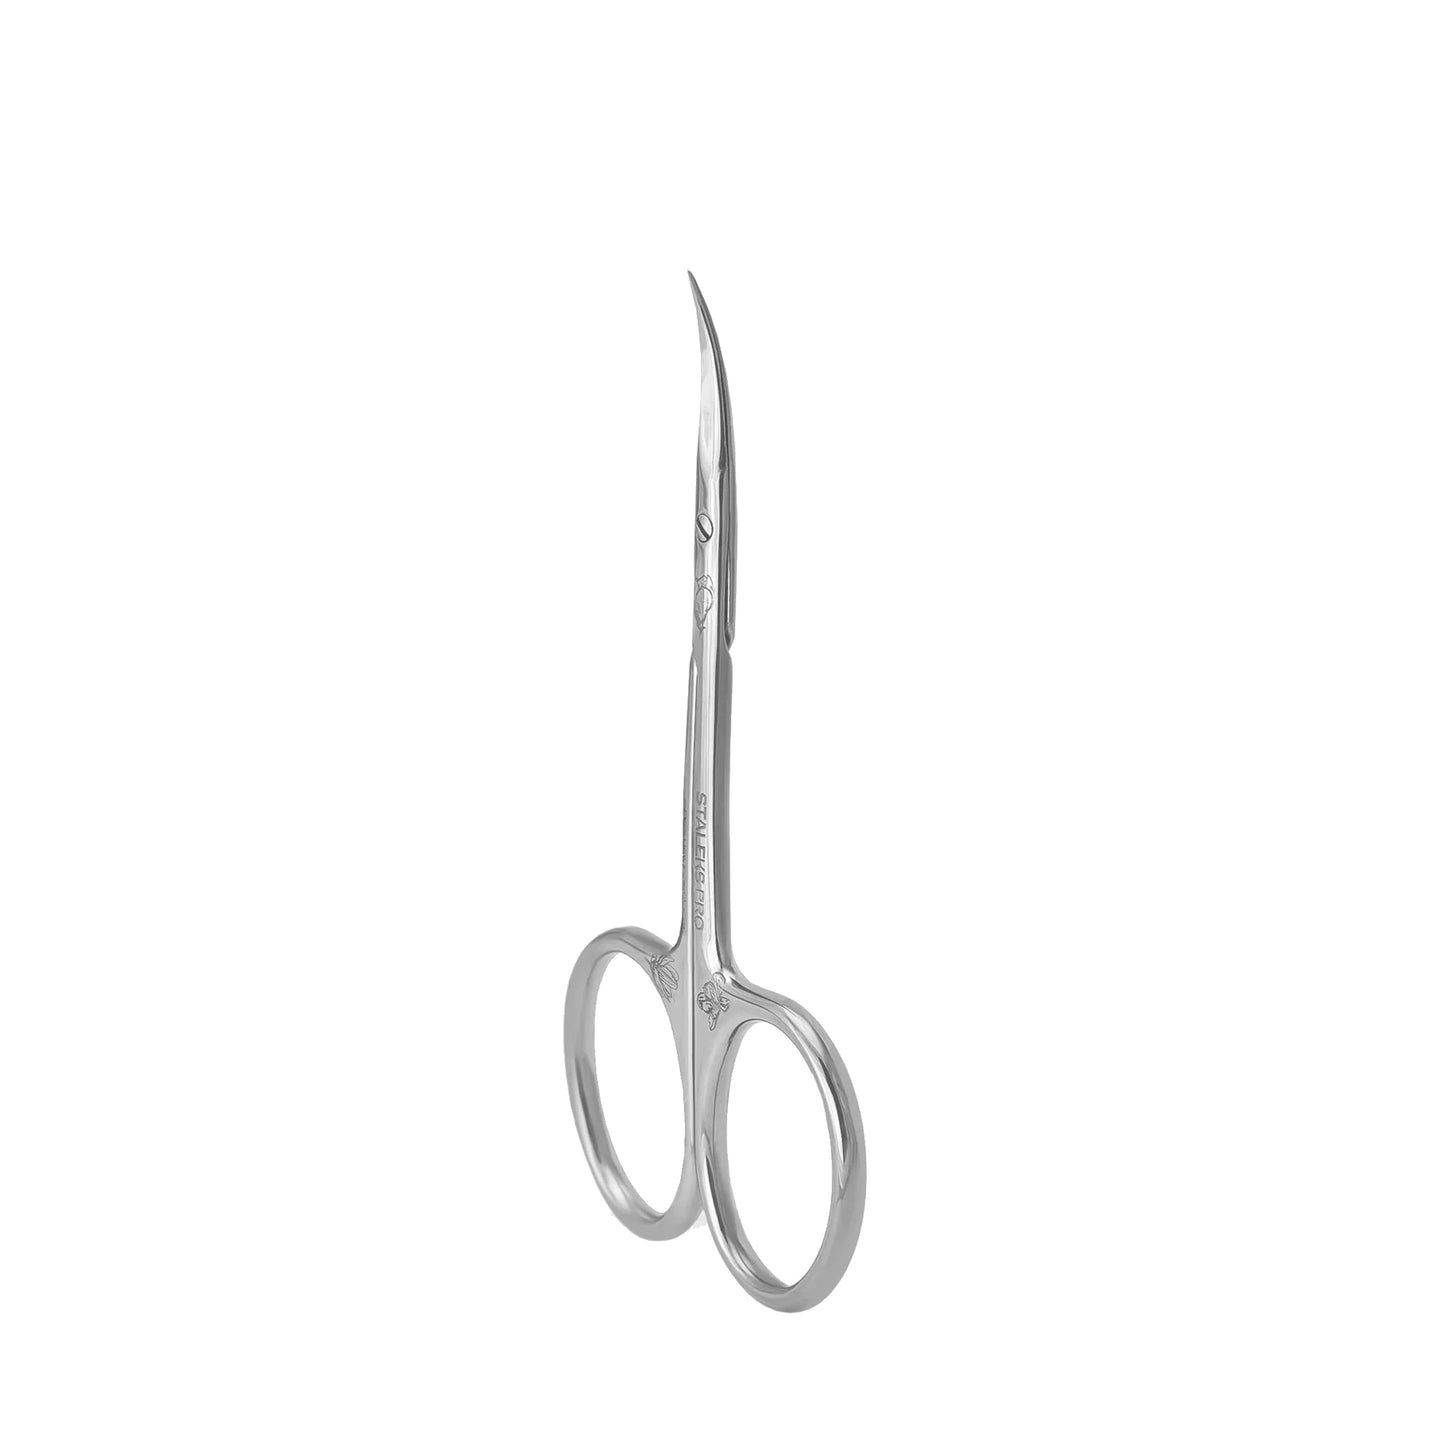 Professional cuticle scissors EXCLUSIVE 20 TYPE 2 (Magnolia) -SX-20/2m